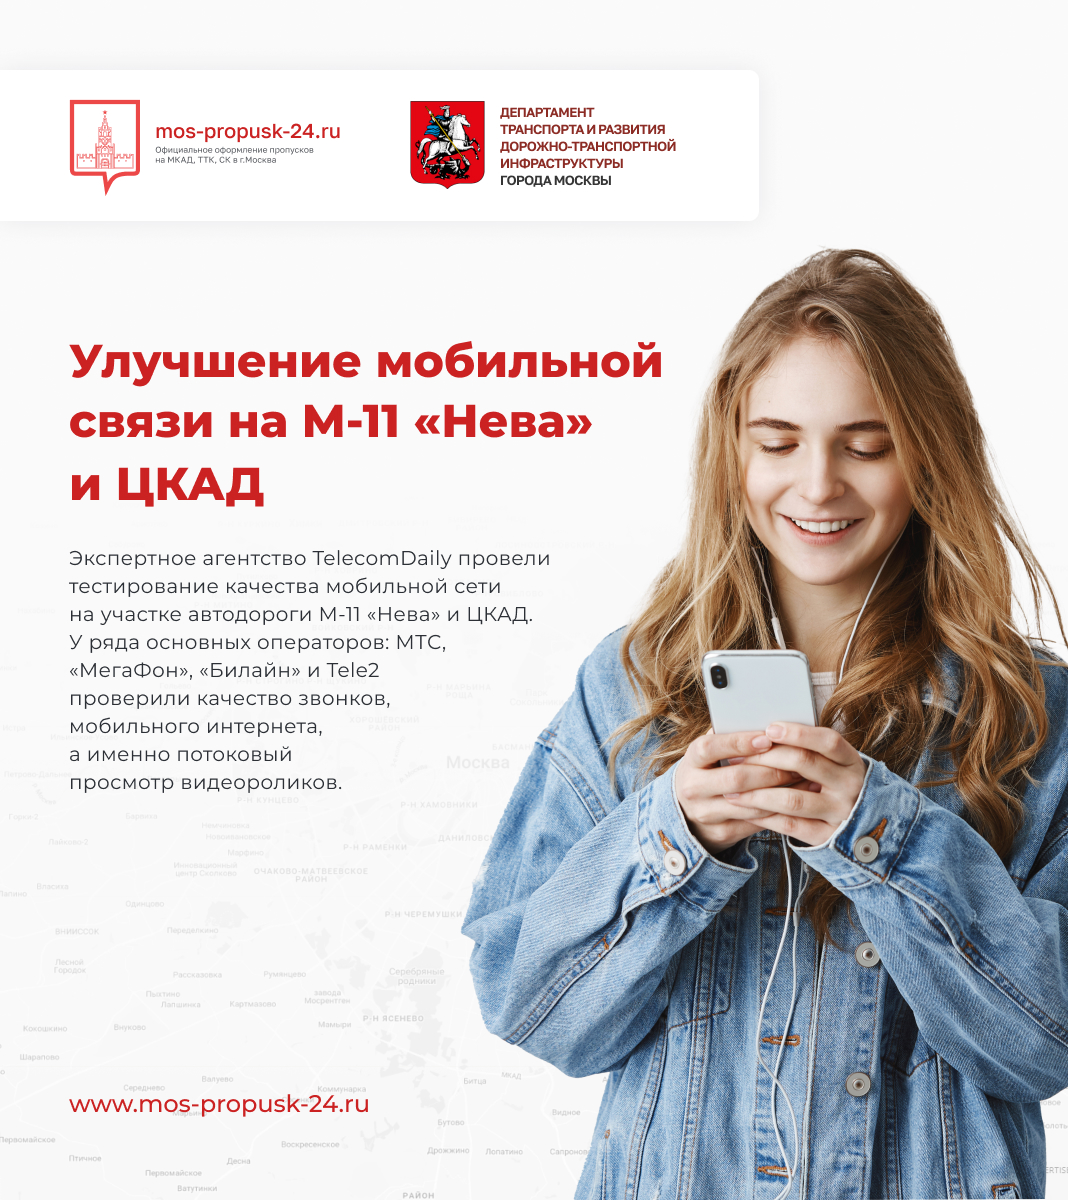 Улучшение мобильной связи на М-11 «Нева» и ЦКАД